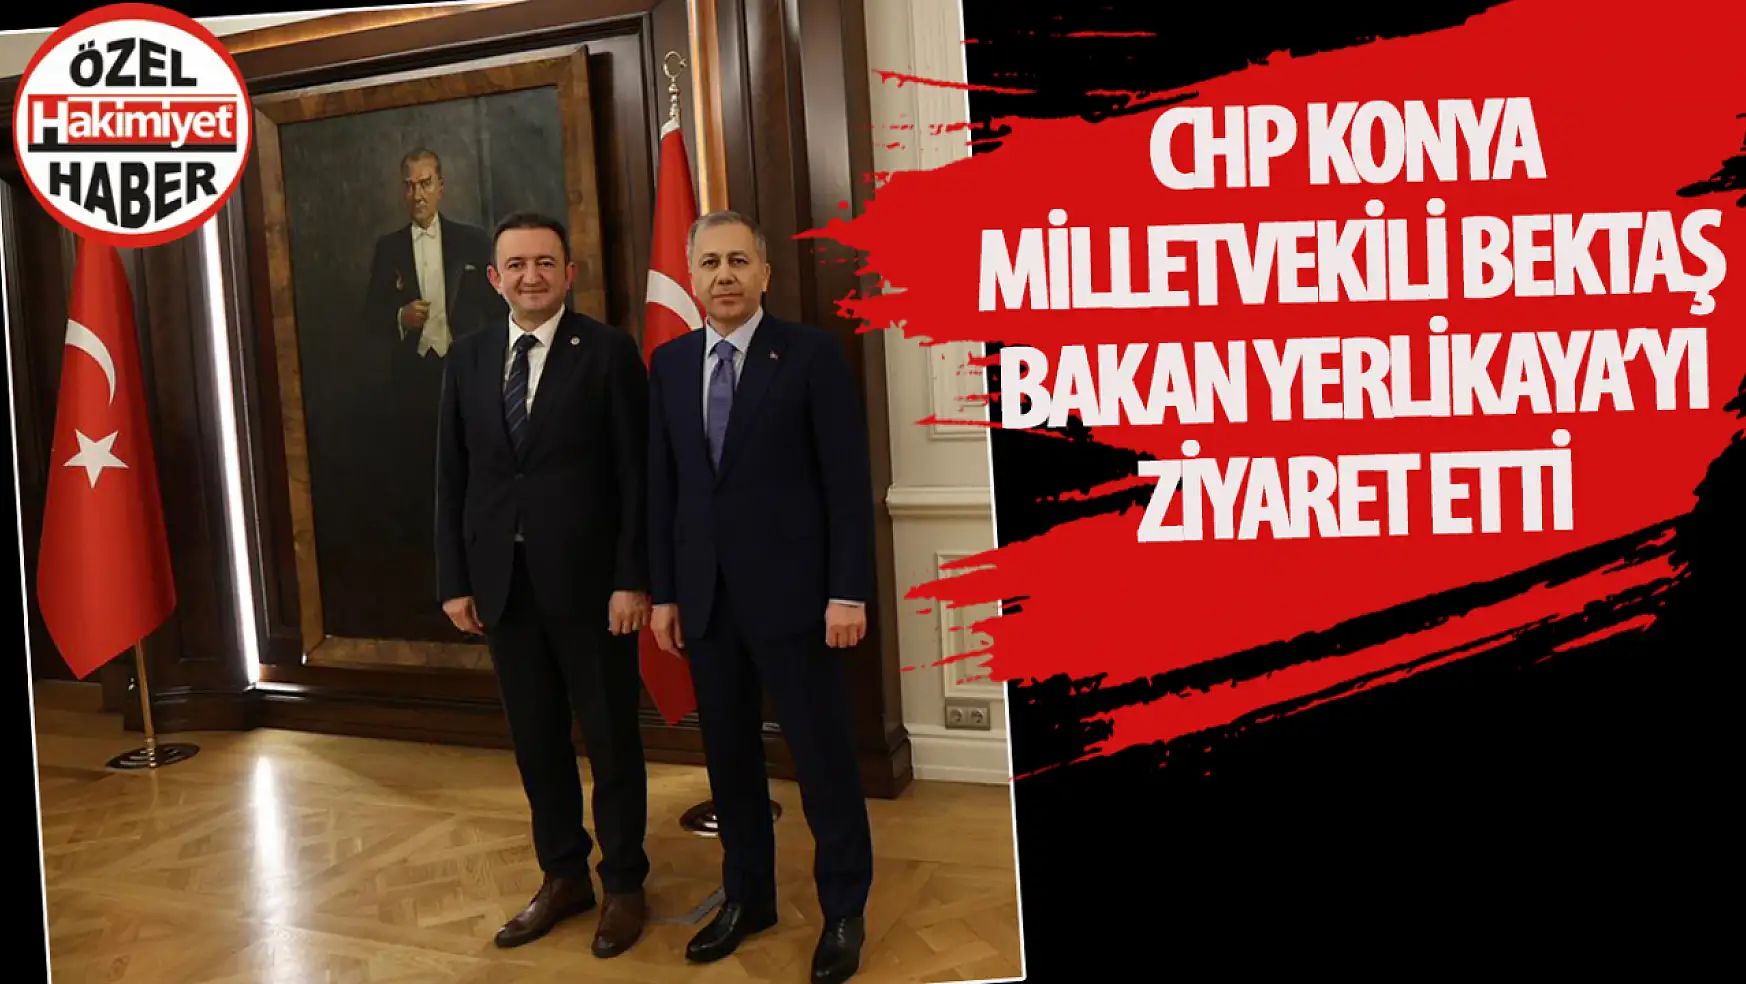 CHP Konya Milletvekili Barış Bektaş, İçişleri Bakanı Ali Yerlikaya ile Görüştü